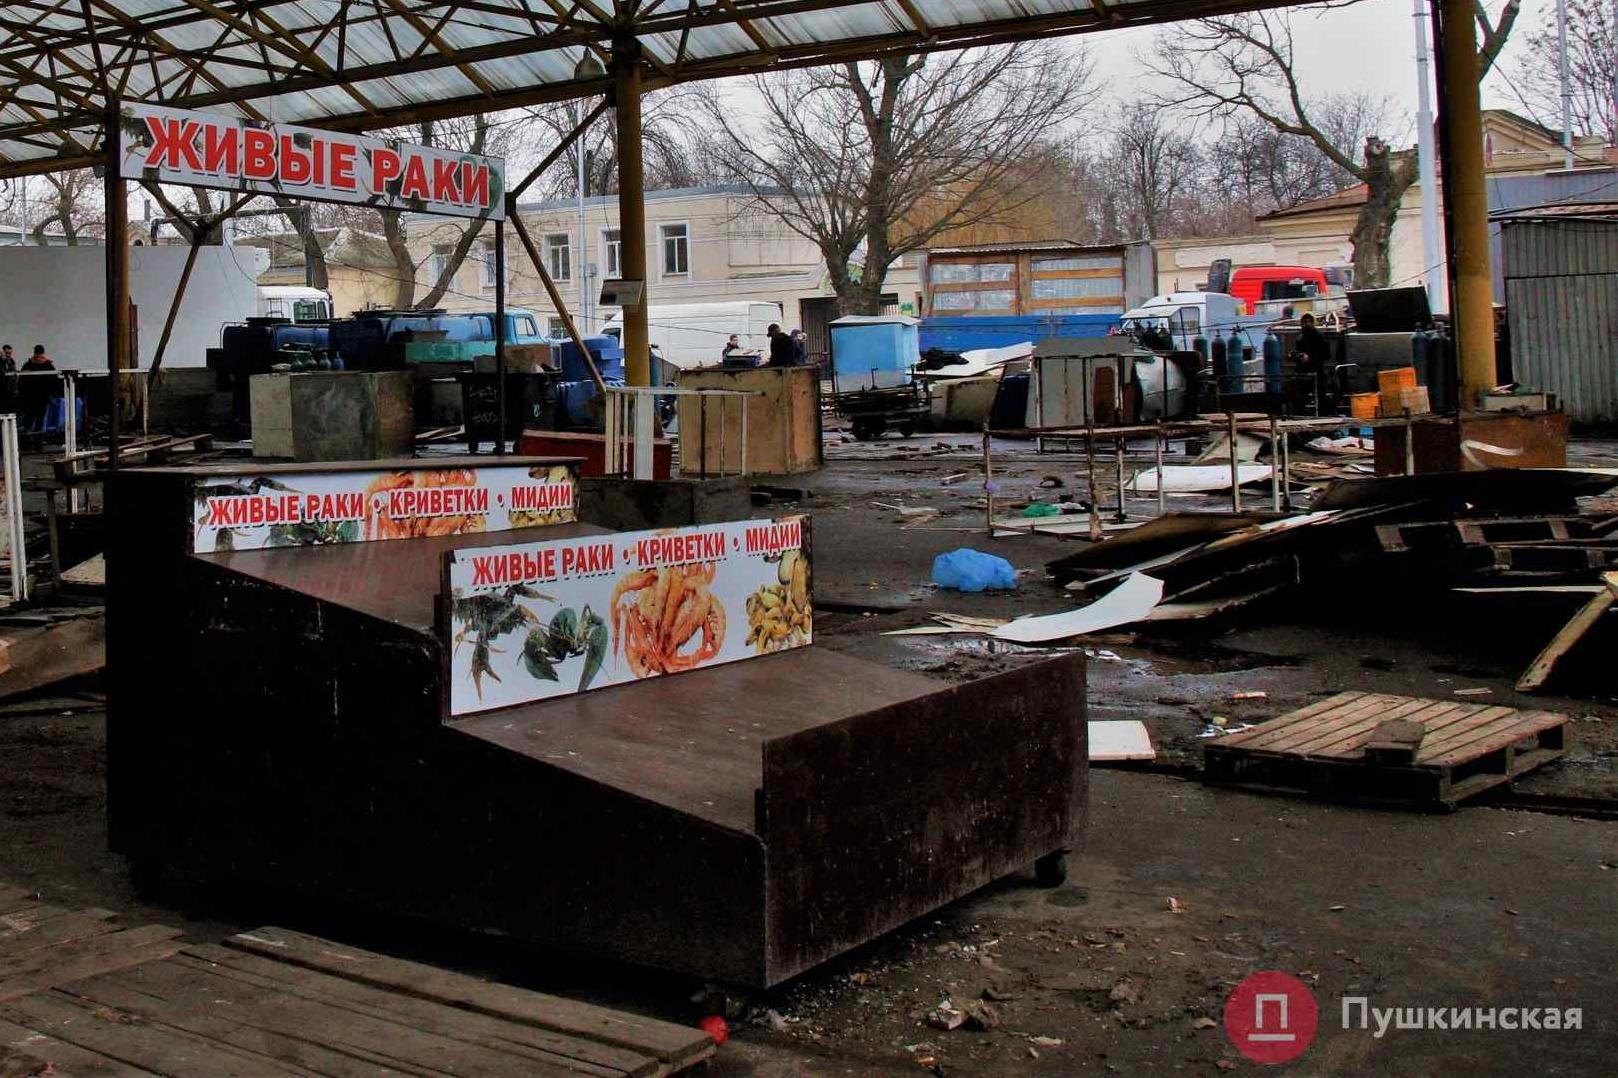 Статья Реконструкция «Привоза»: что происходит на рынке и куда переехали рыбные ряды? Фото Утренний город. Одесса